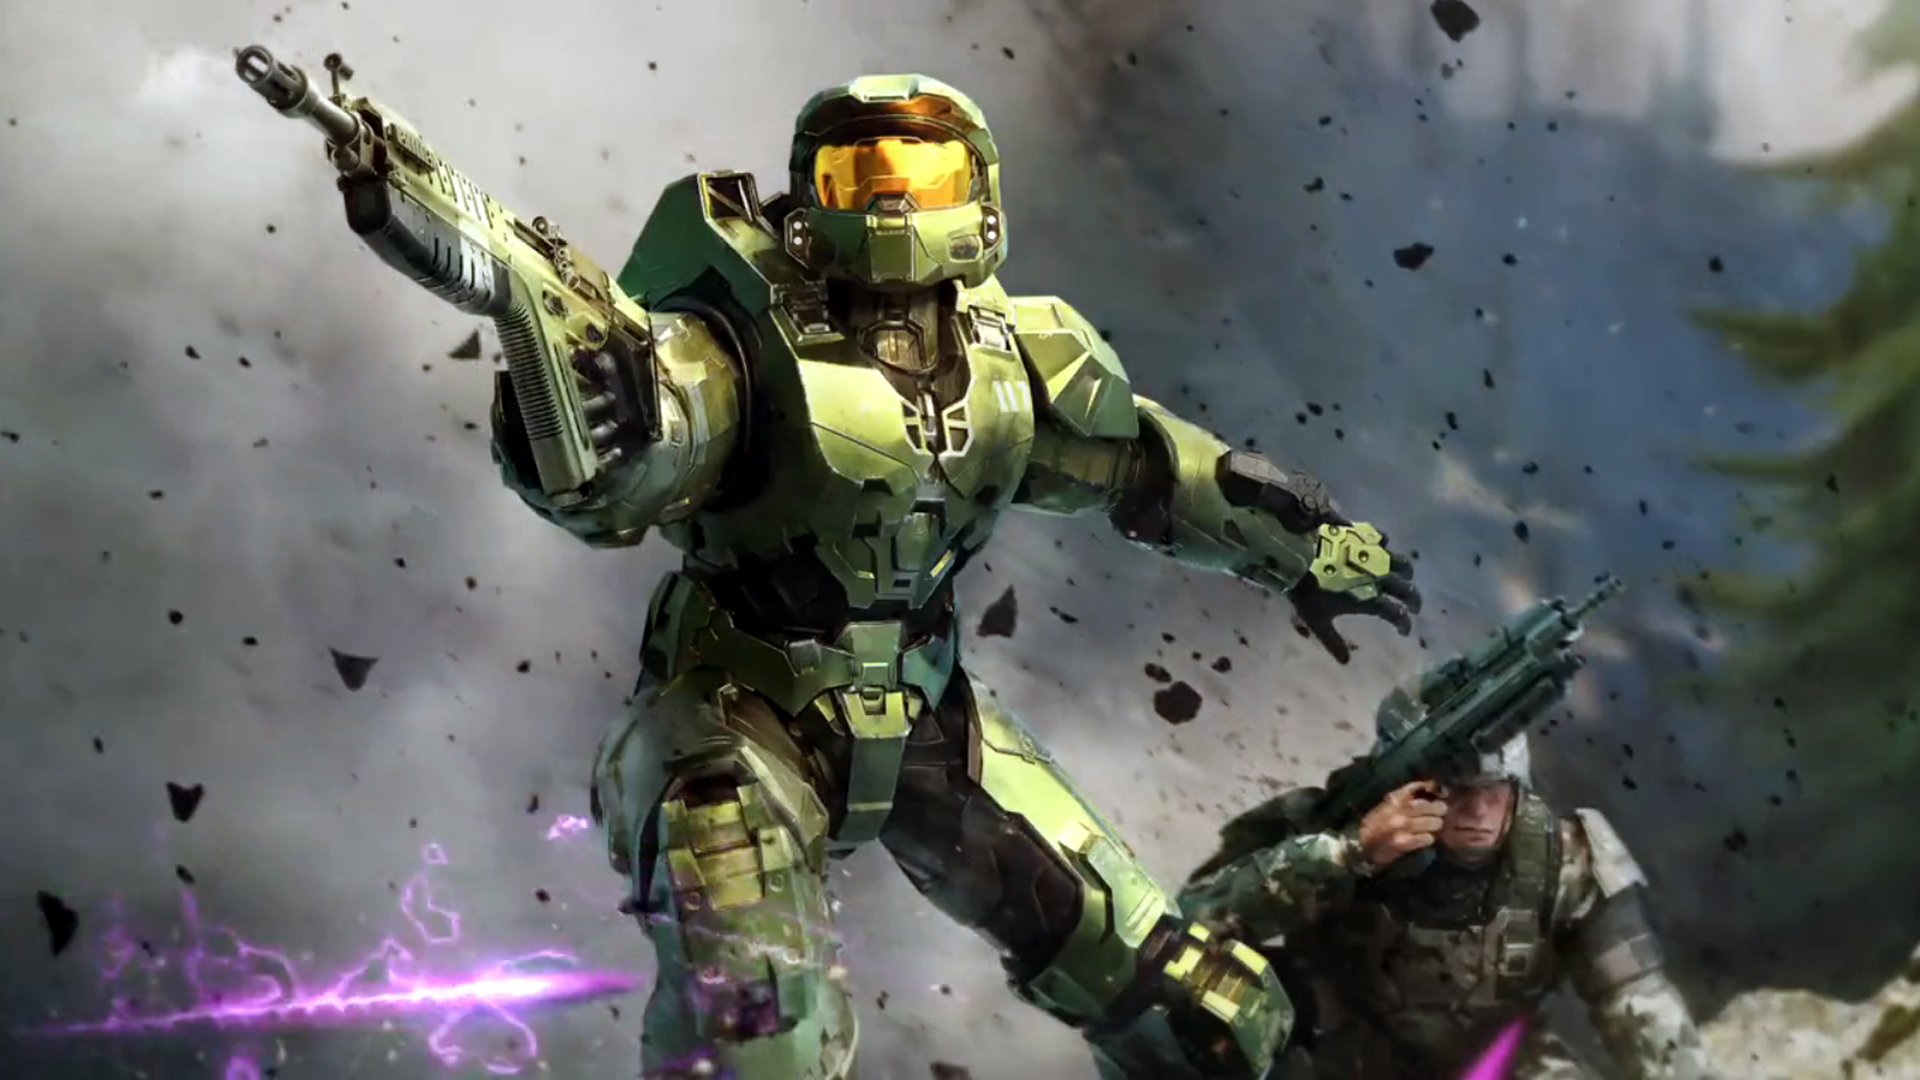 Para ver Halo na TV: assinantes do Game Pass Ultimante terão um mês grátis  de Paramount+ 